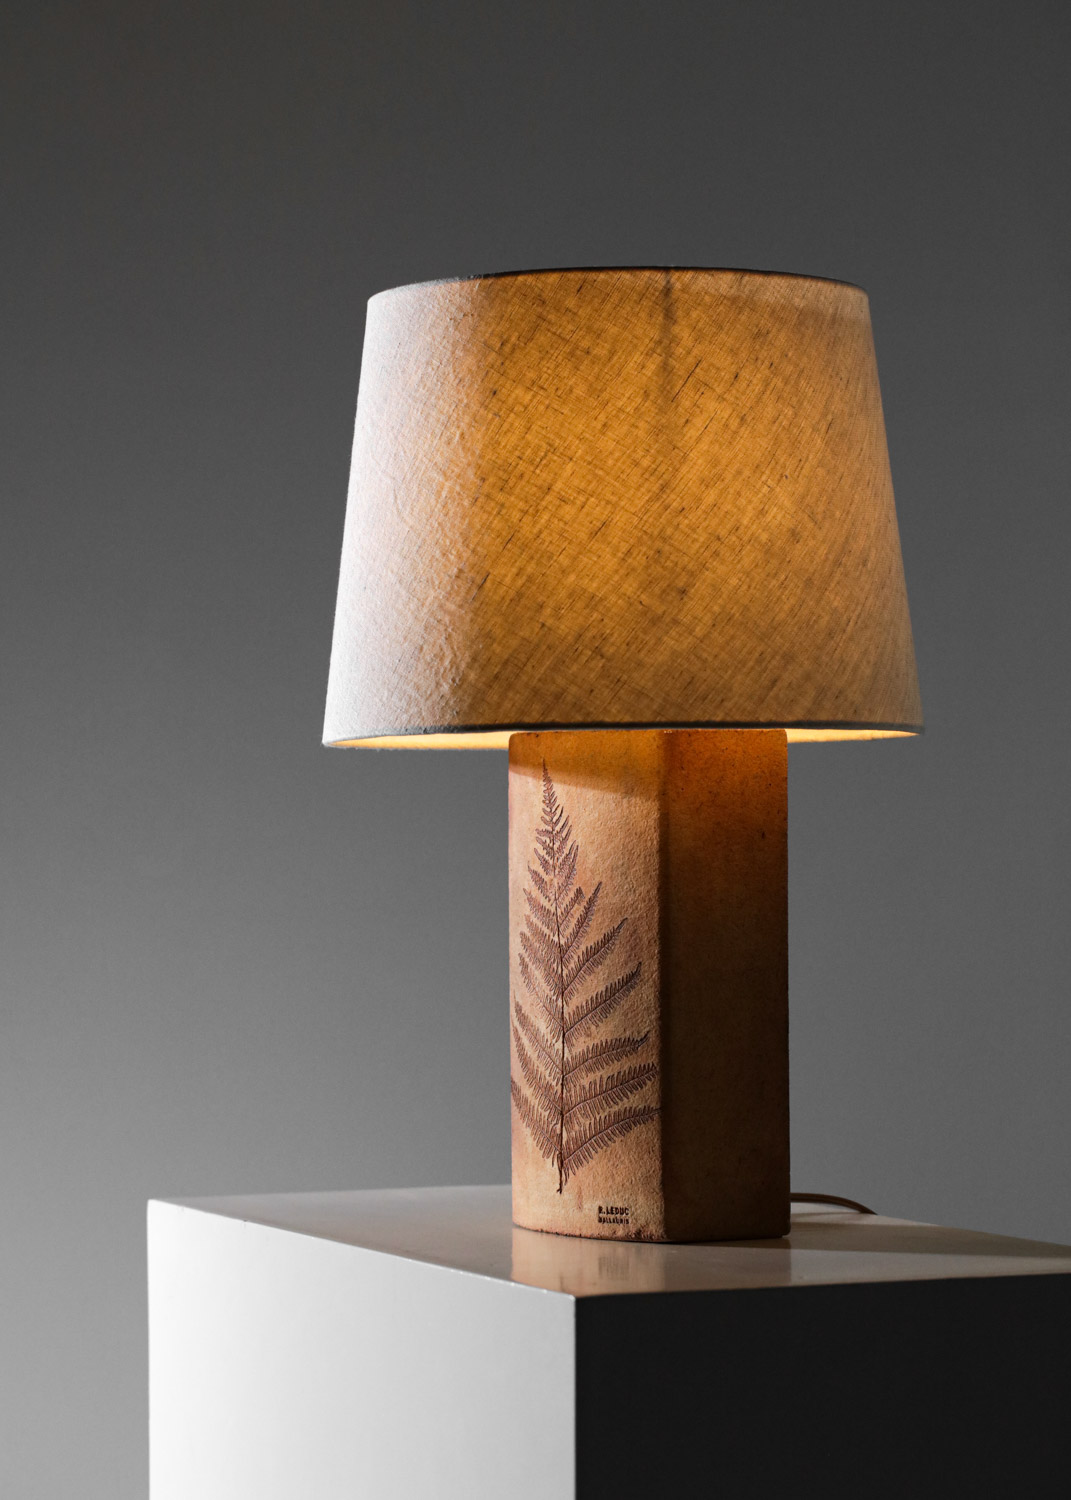 lampe de table en ceramique leduc années 70 style roger capron - G881